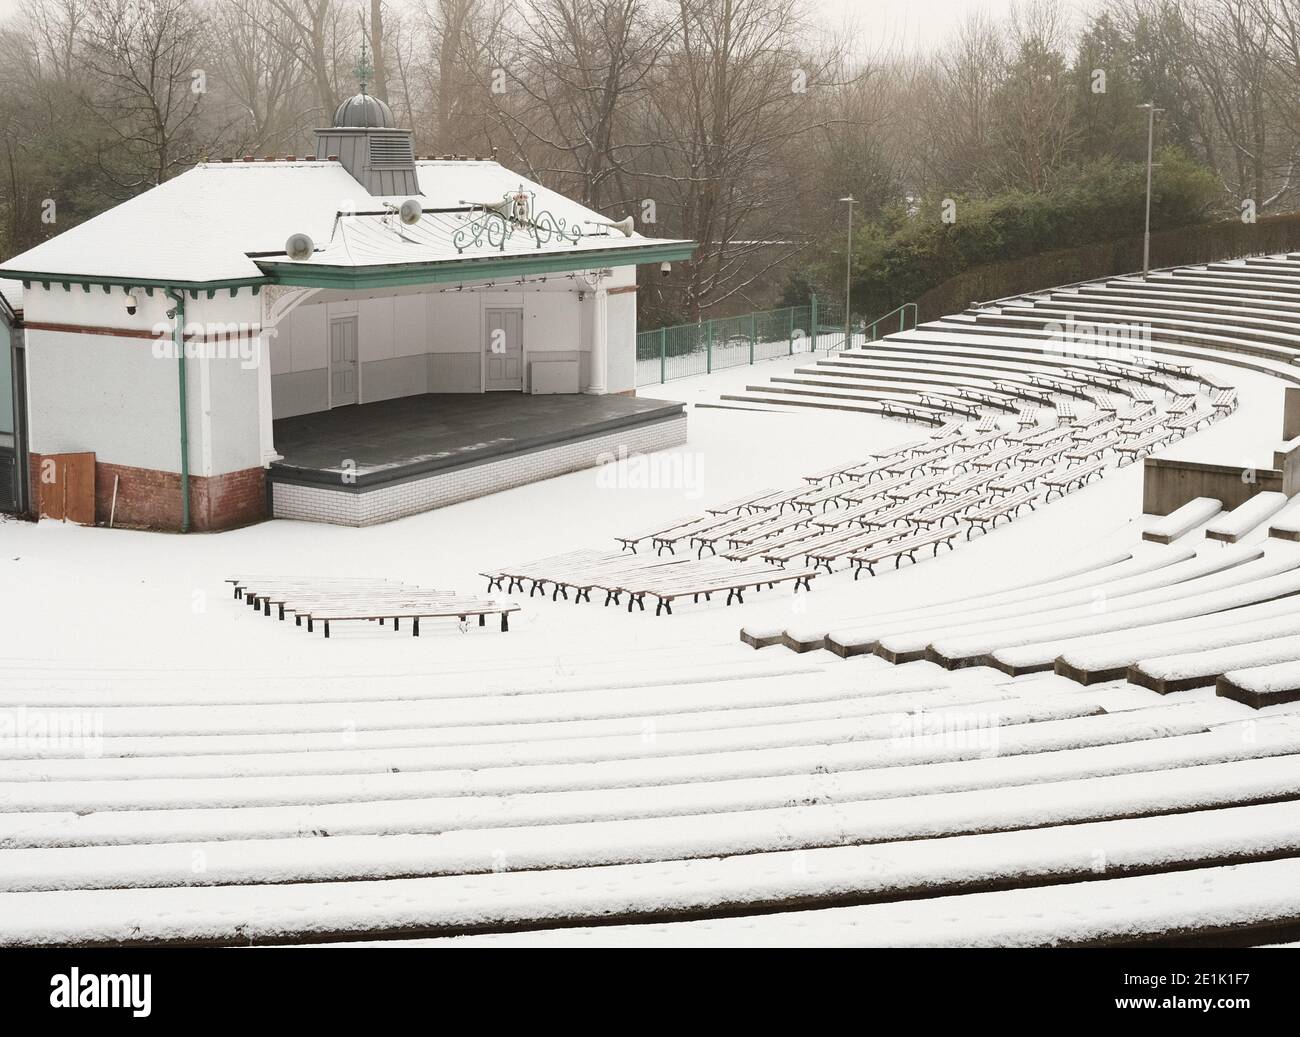 Kelvingrove Bandstand dans la neige, Glasgow. Janvier 2021. Banque D'Images